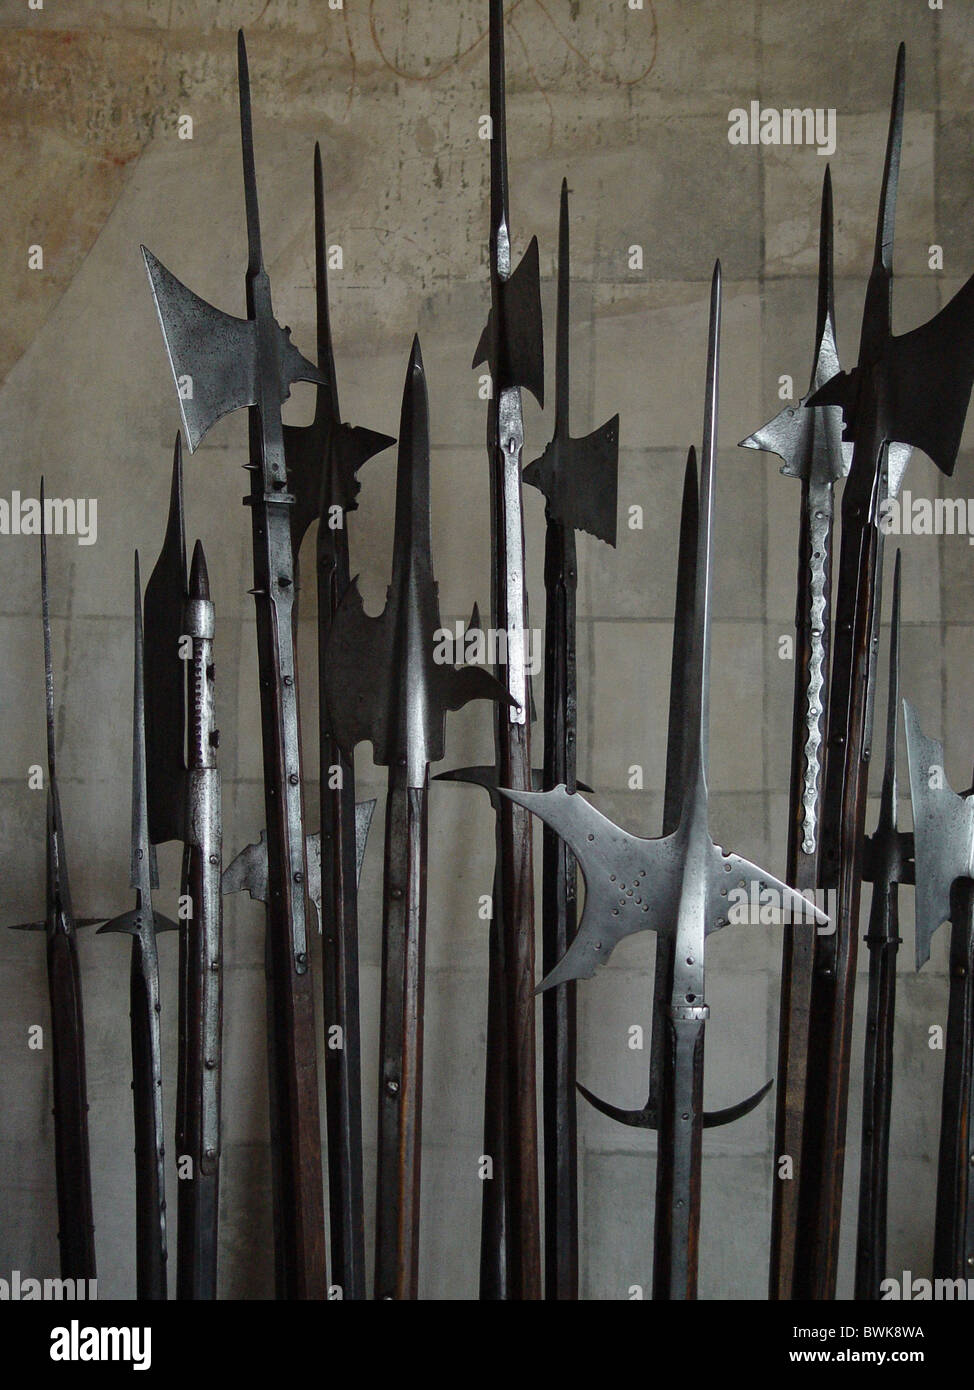 Pôle d'armes collection historique de l'armurerie armes hallebardes château château de Chillon montreux vaud Switzerla Banque D'Images